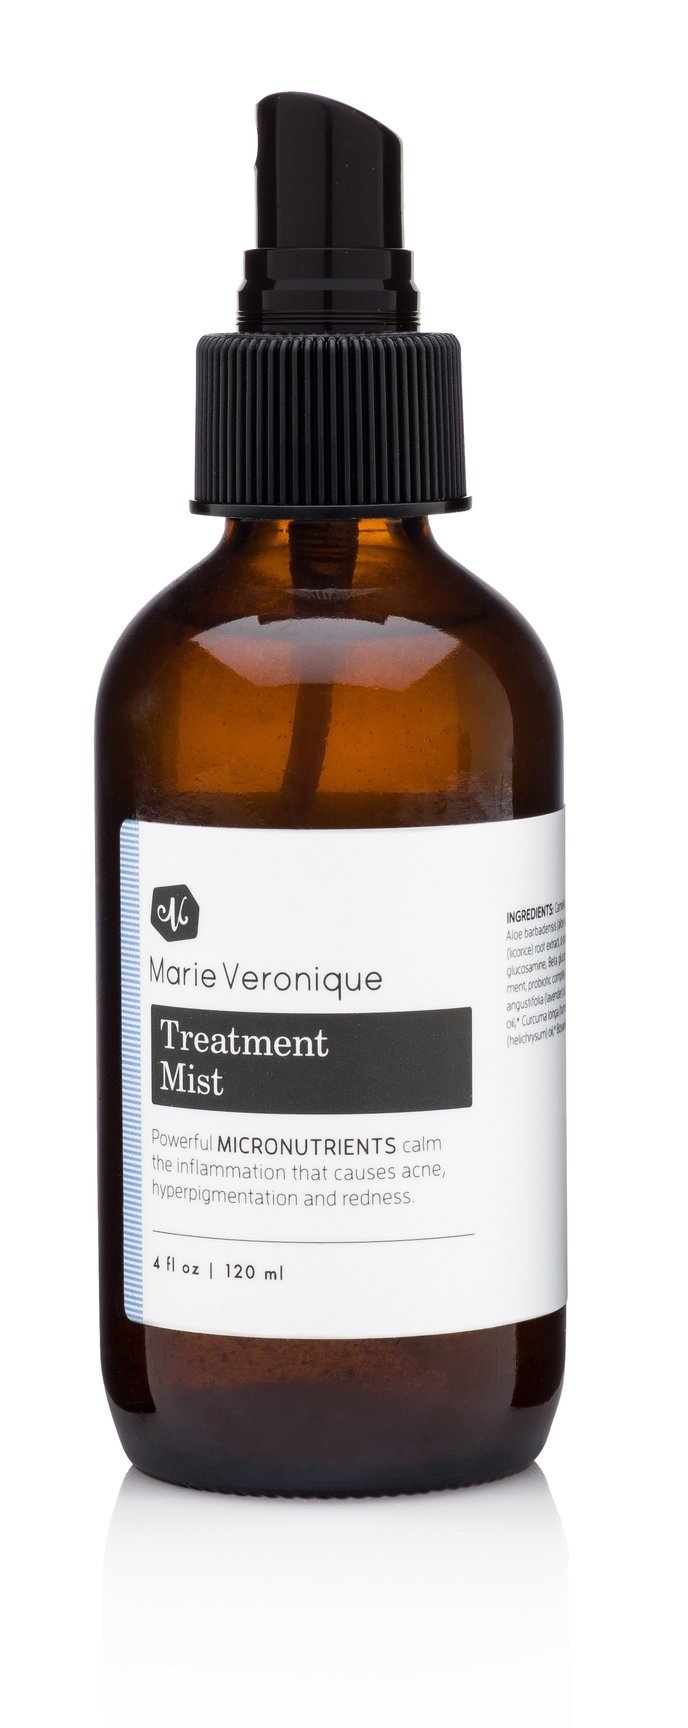 Marie Veronique Treatment Mist